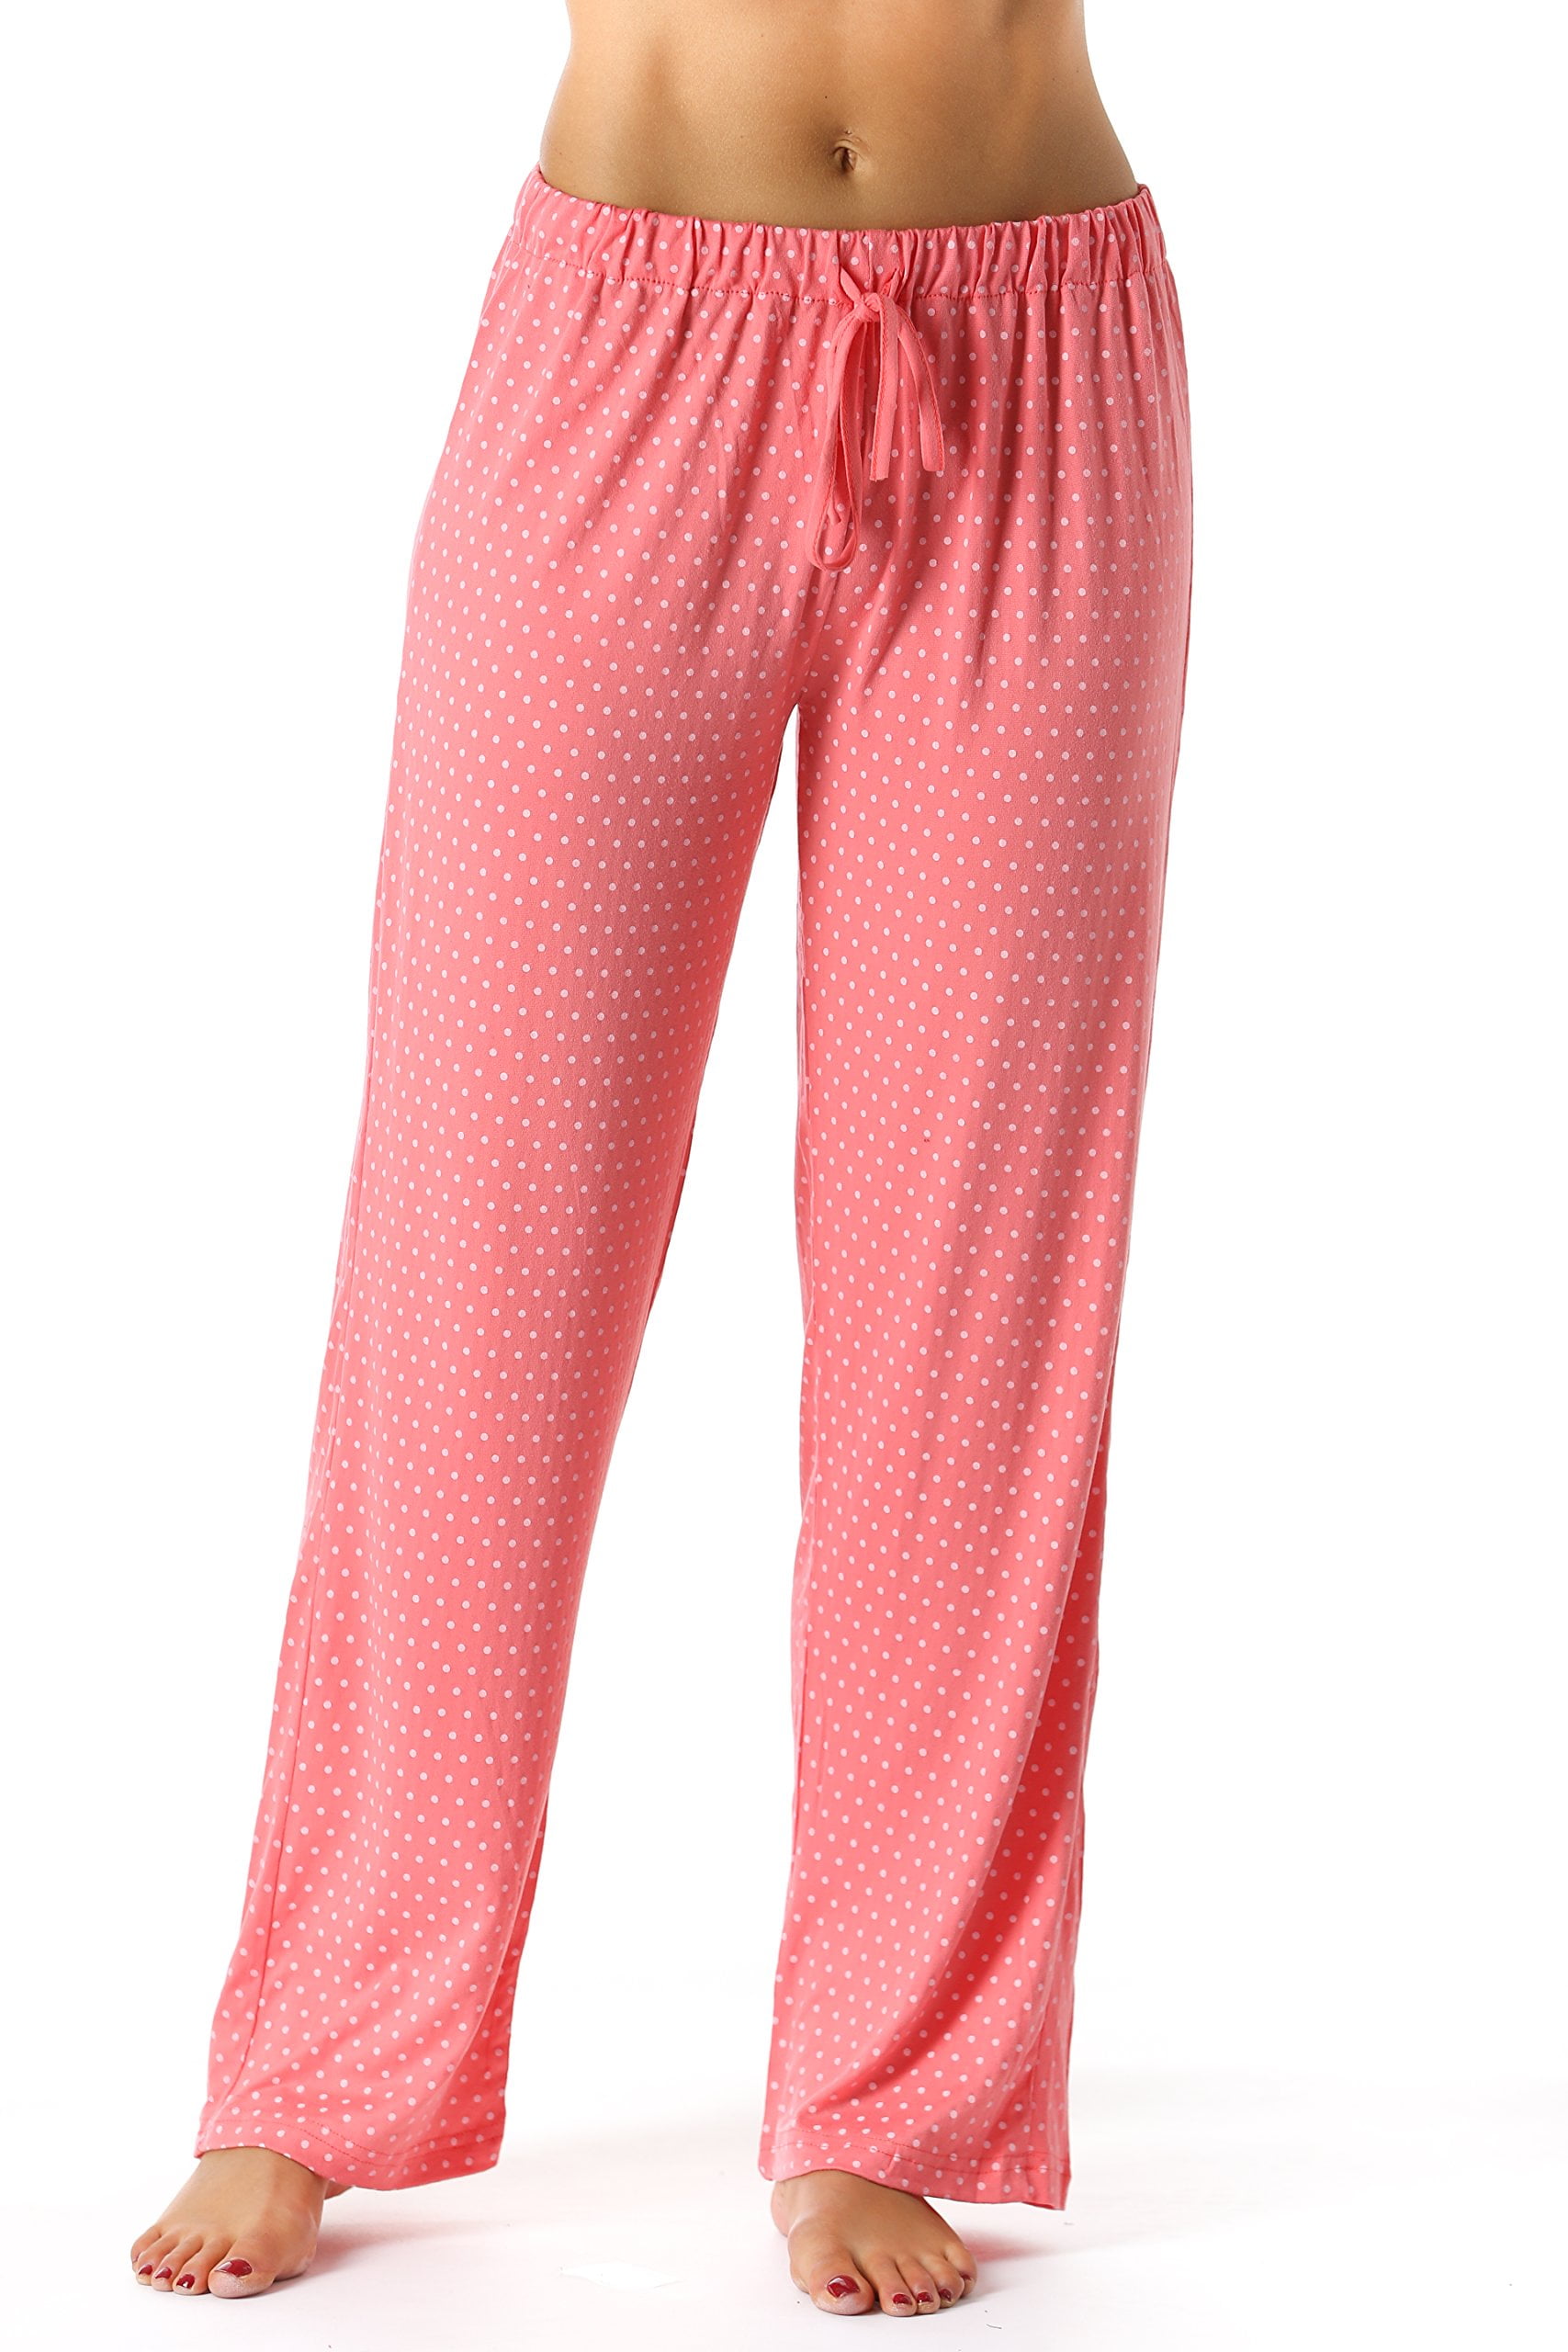 Dropship Blue Sakura Women Cotton Pajama Bottoms Loungewear Loose Pyjamas  Pants to Sell Online at a Lower Price | Doba